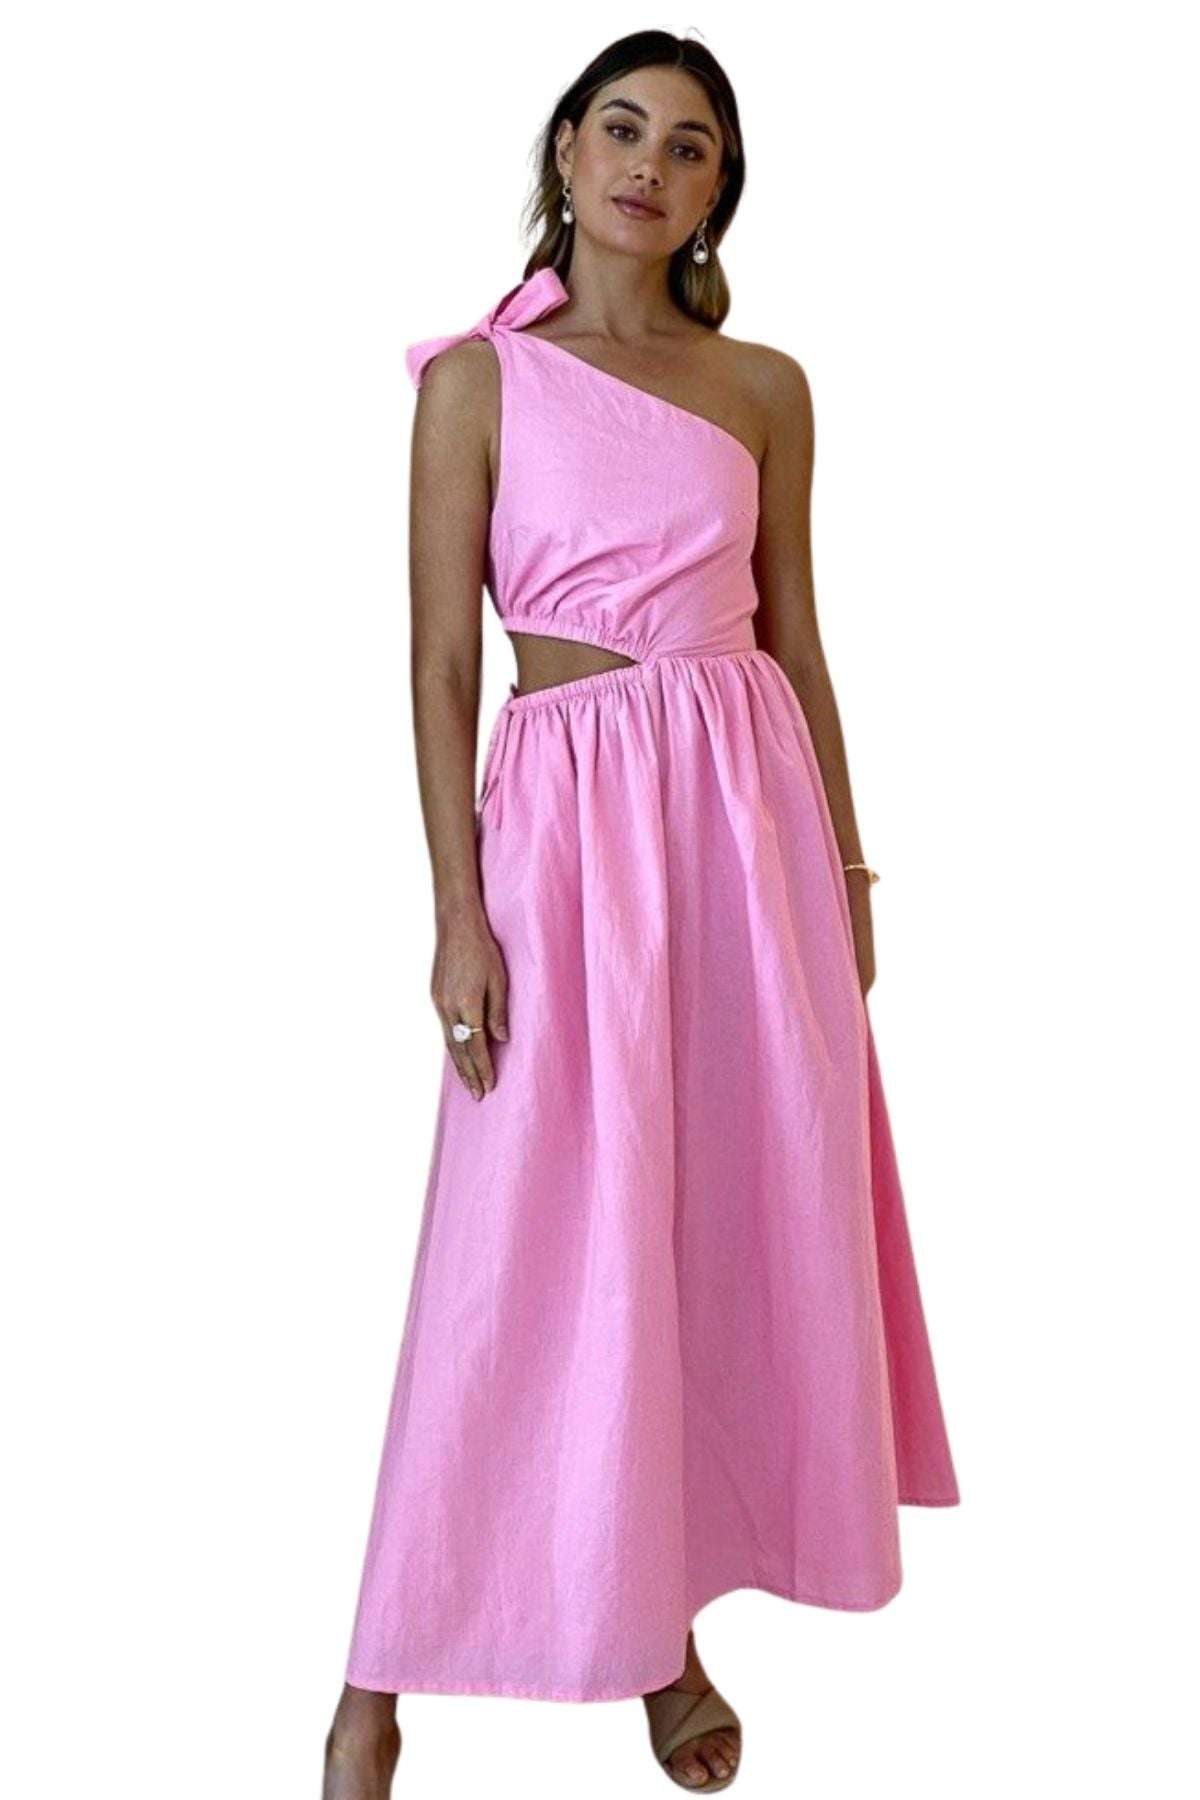 By Nicola BY NICOLA Gabriella One Shoulder Midi Dress (Pink Grapefruit) - by-nicola-gabriella-one-shoulder-midi-dress-pink-grapefruit-dress-for-a-night-30754142.jpg